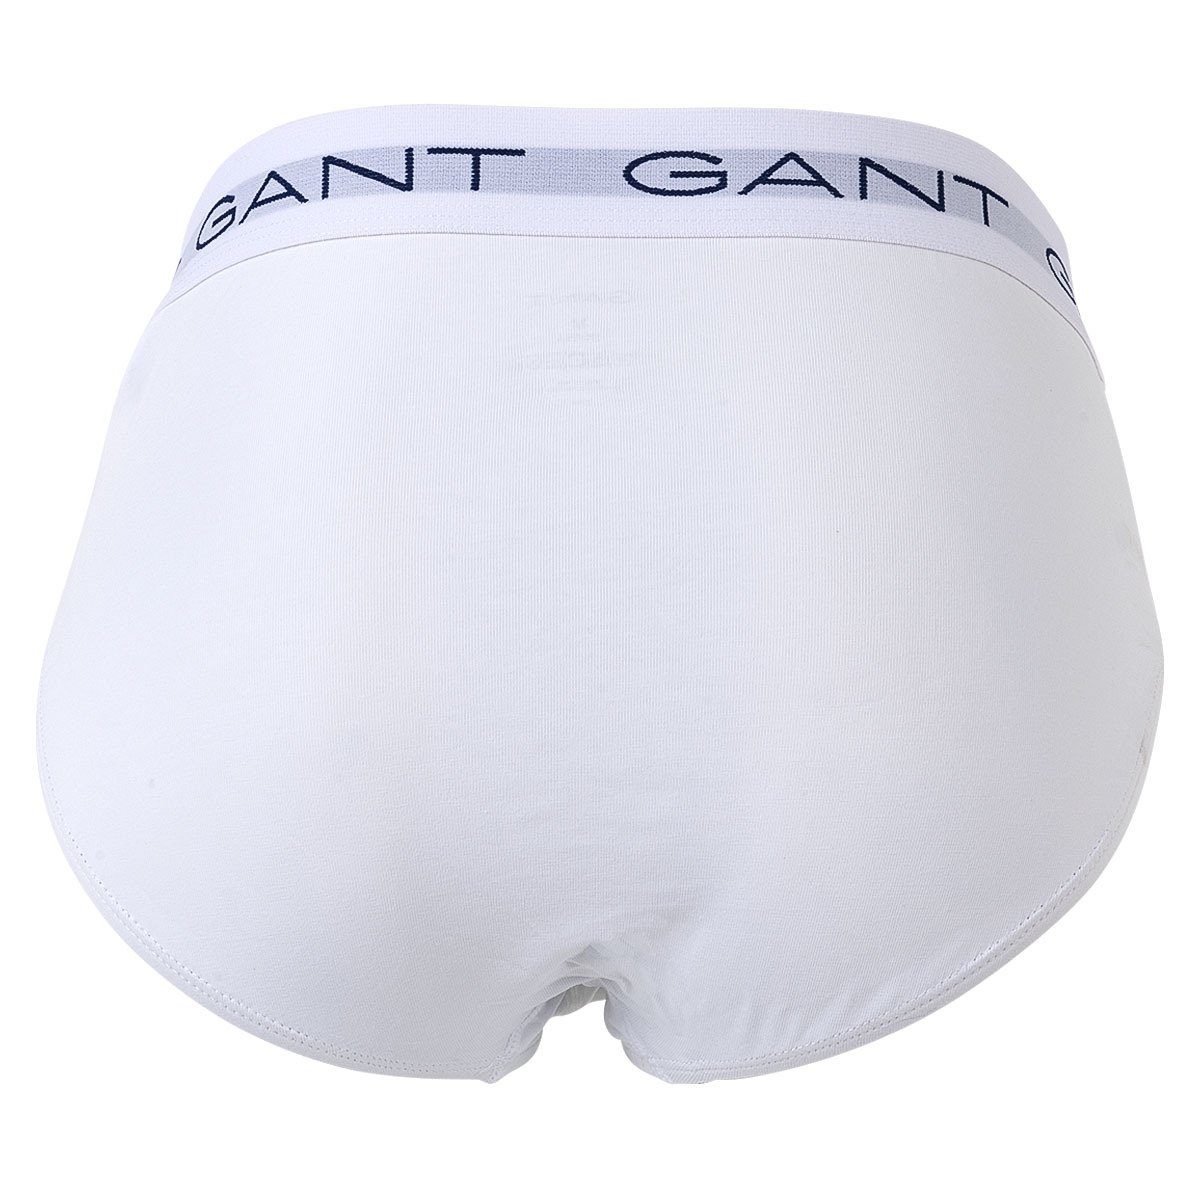 Grau Pack Slip Gant Cotton Briefs, 3er - Slips, Herren Stretch